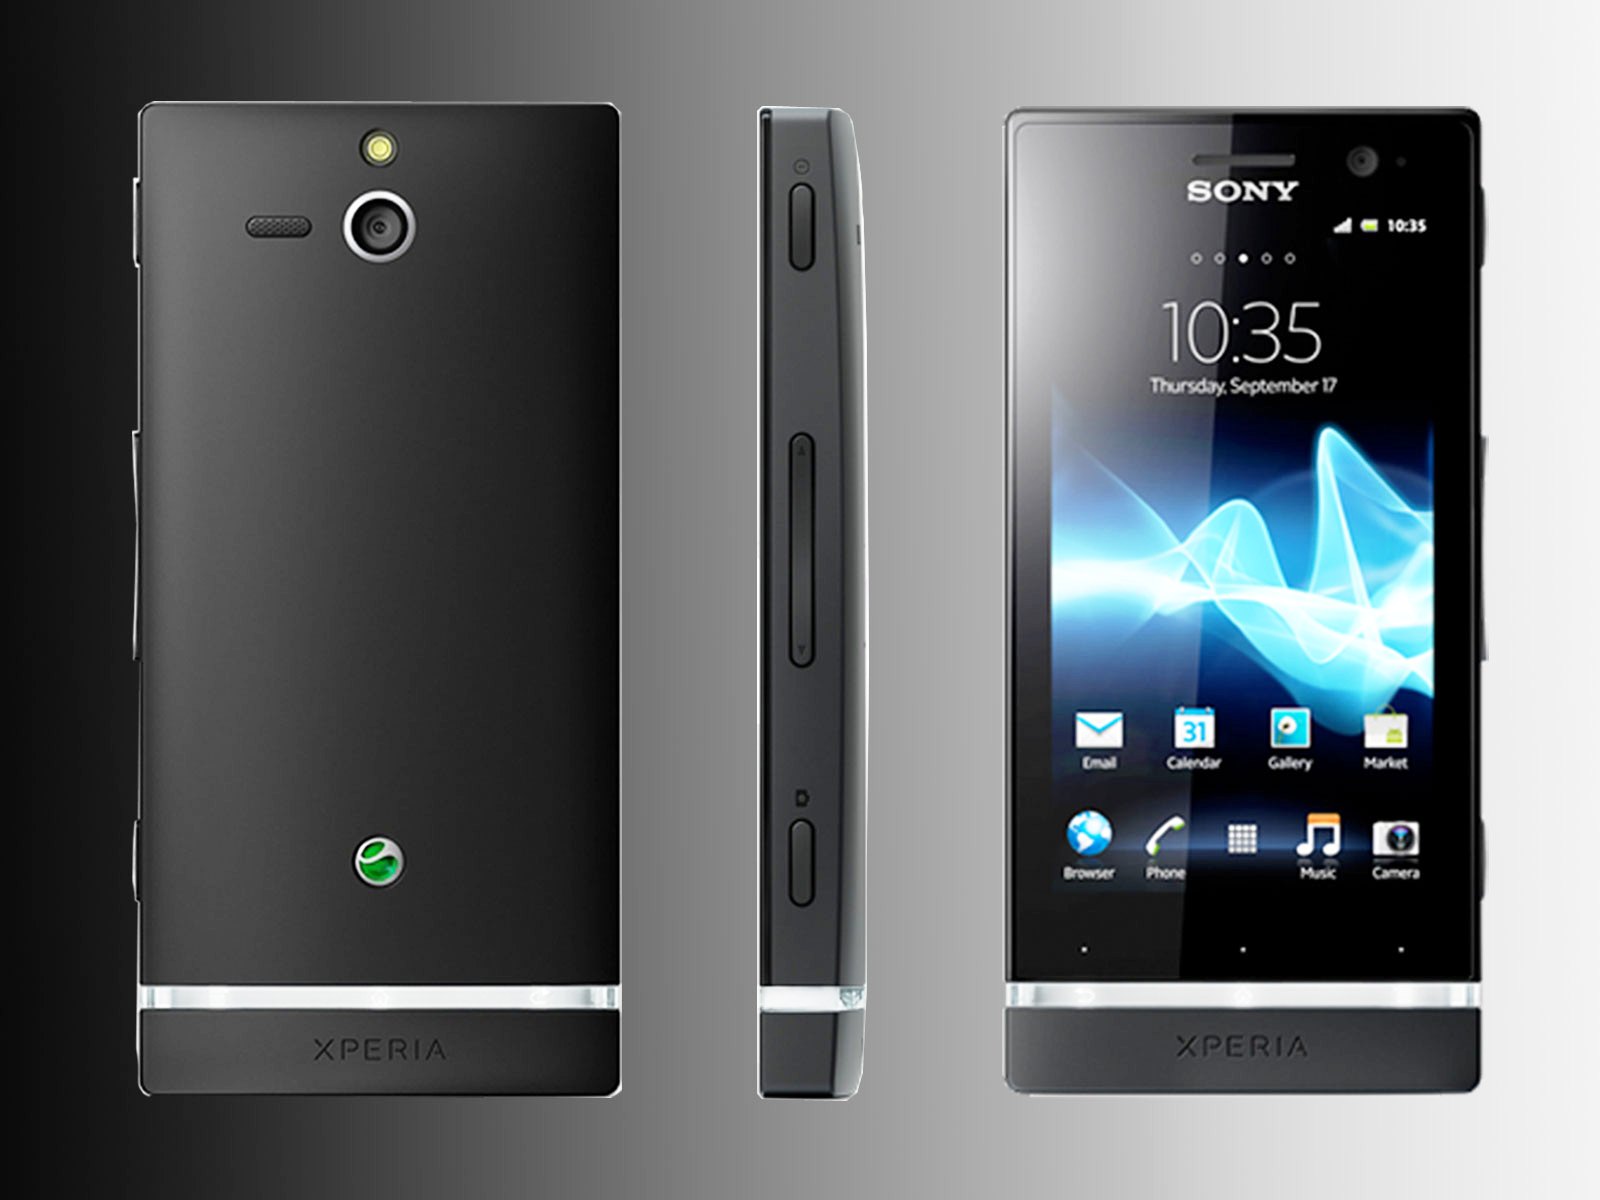 Xperia 14. Sony Xperia 2013. Sony Xperia u. Sony Xperia u8. Sony Ericsson Xperia u.